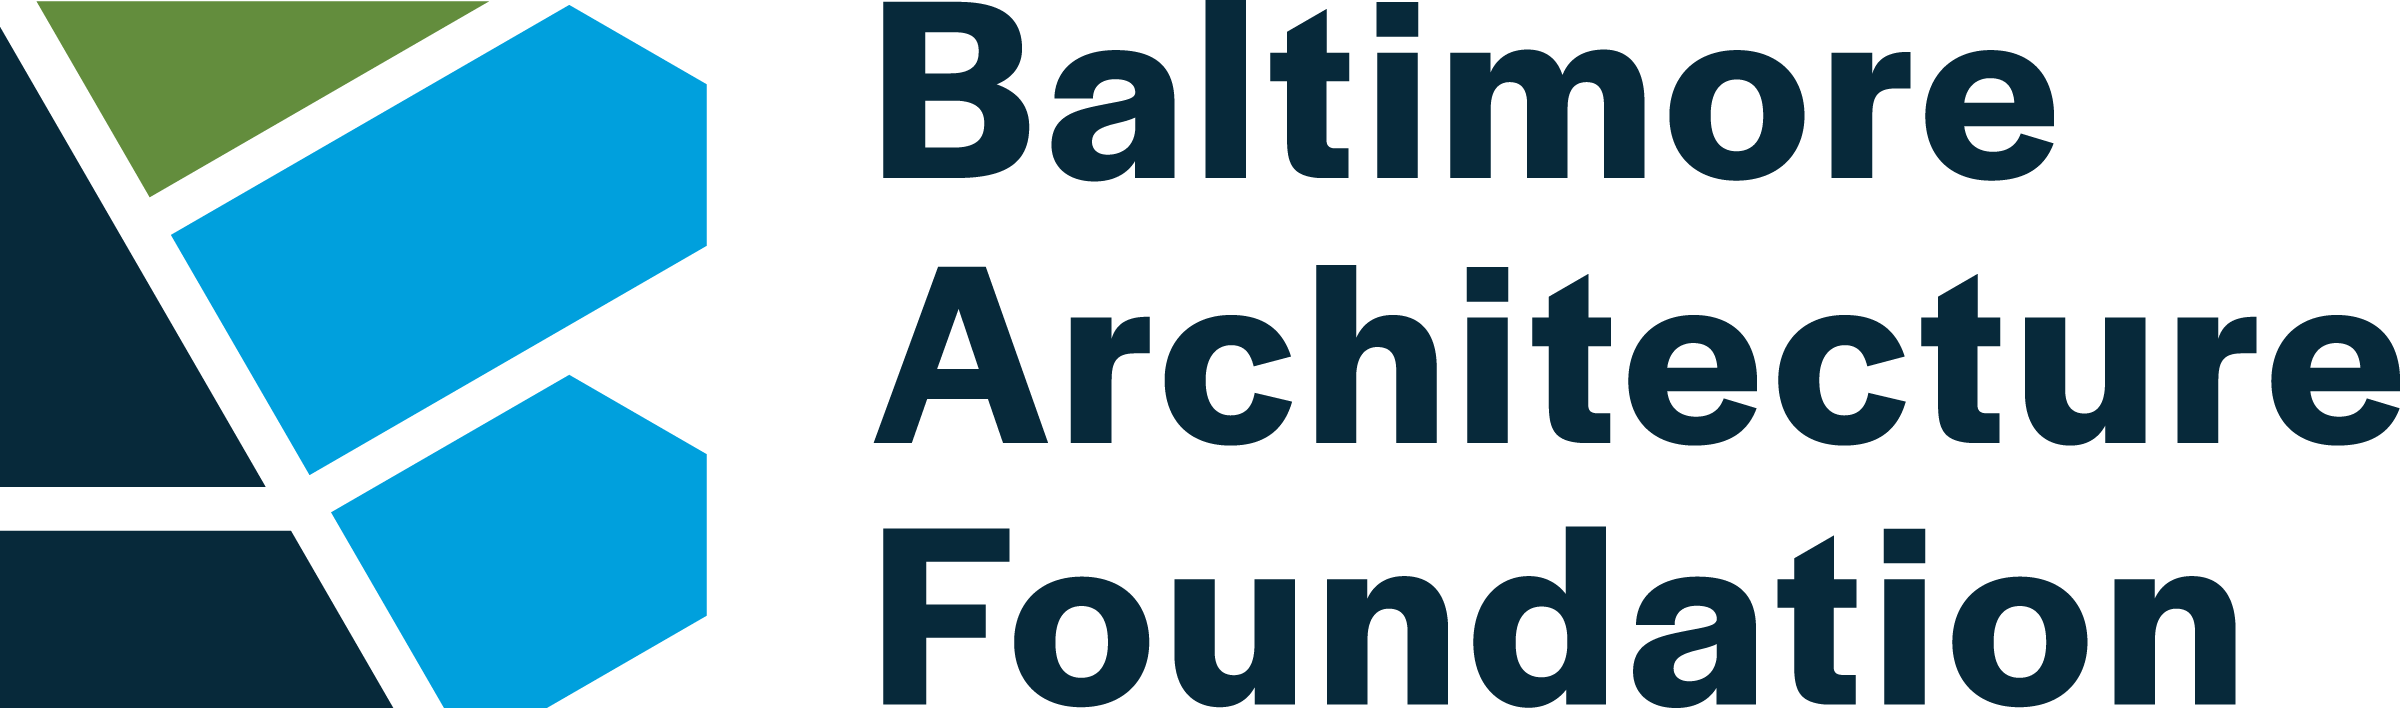 Baltimore Architecture Foundation logo